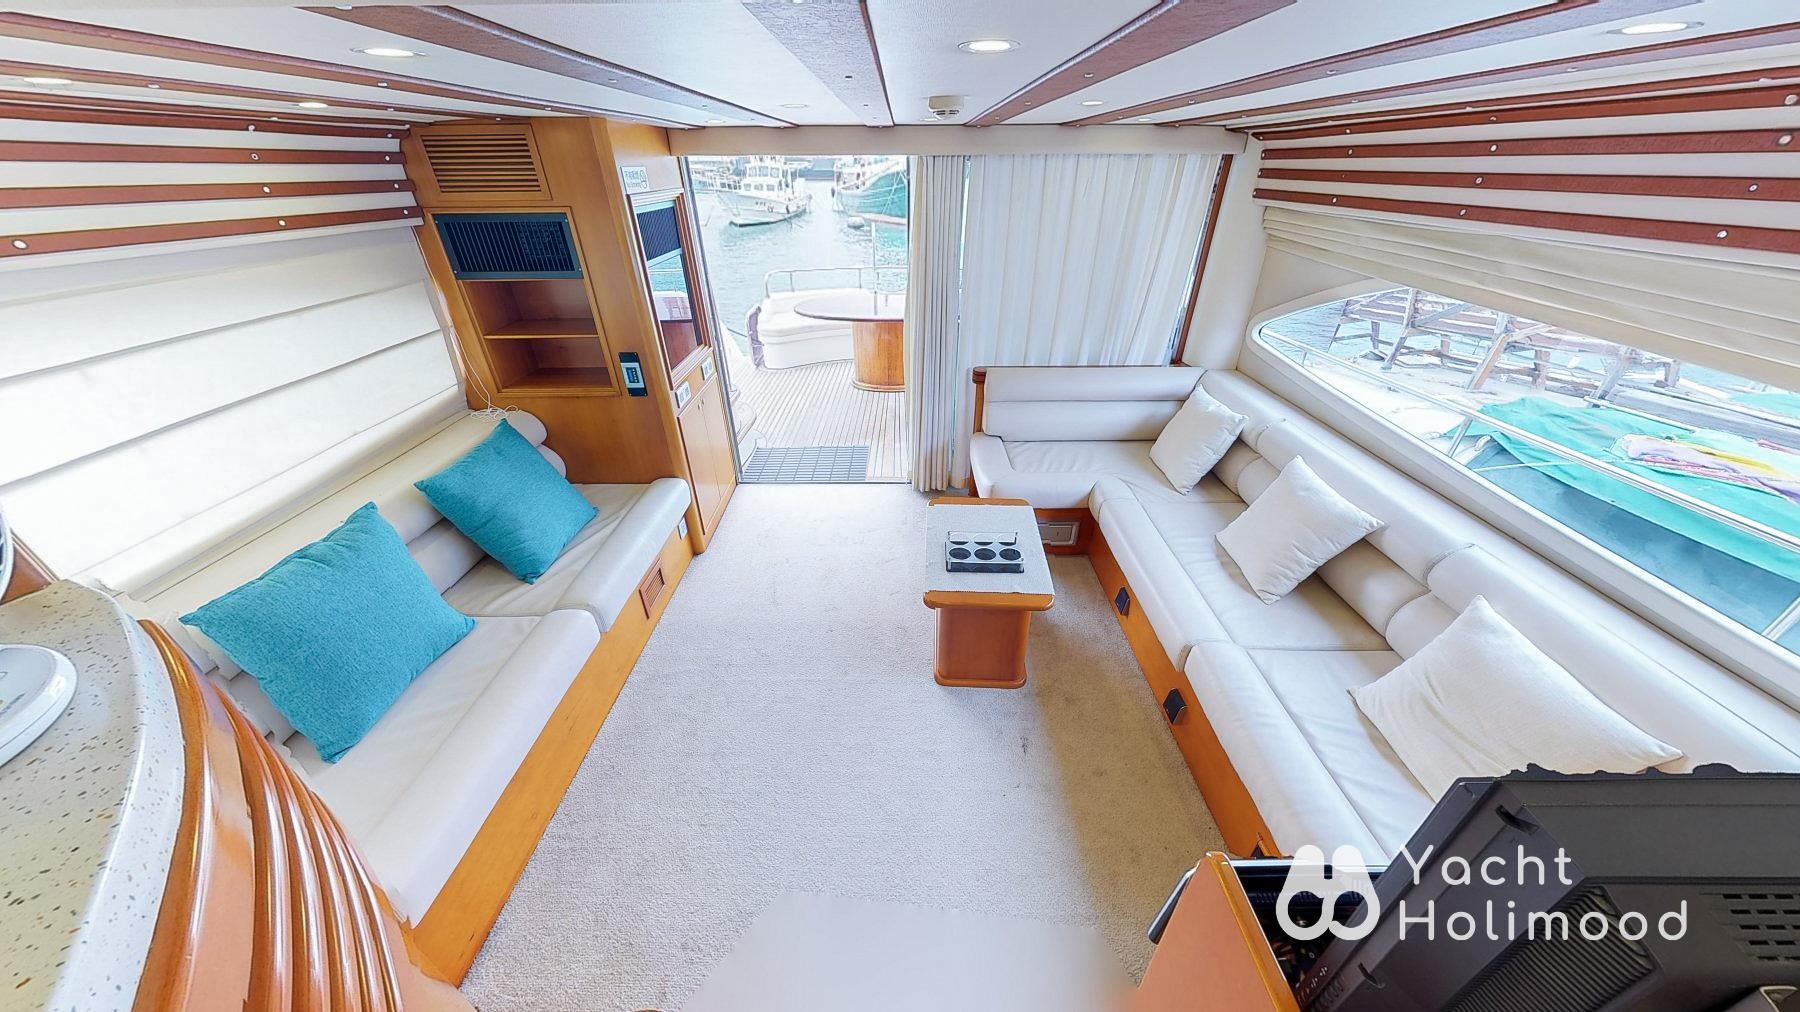 CP04 [王牌系列] 豪華西式遊艇全包限定套餐 (到會, 飲品, 水上彈床及浮毯) 低至$599/位起 8